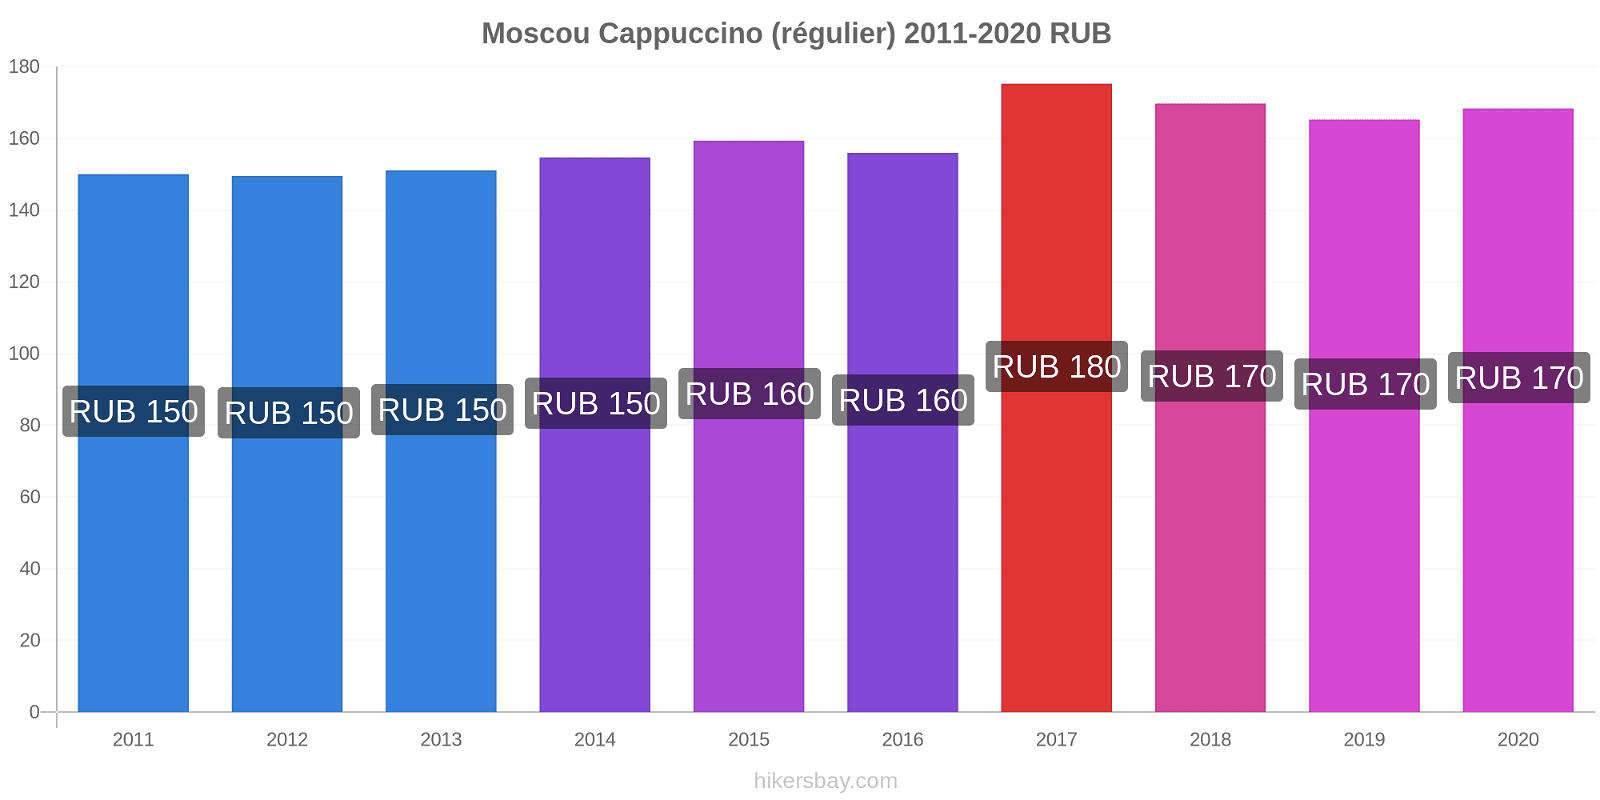 Moscou changements de prix Cappuccino (régulier) hikersbay.com